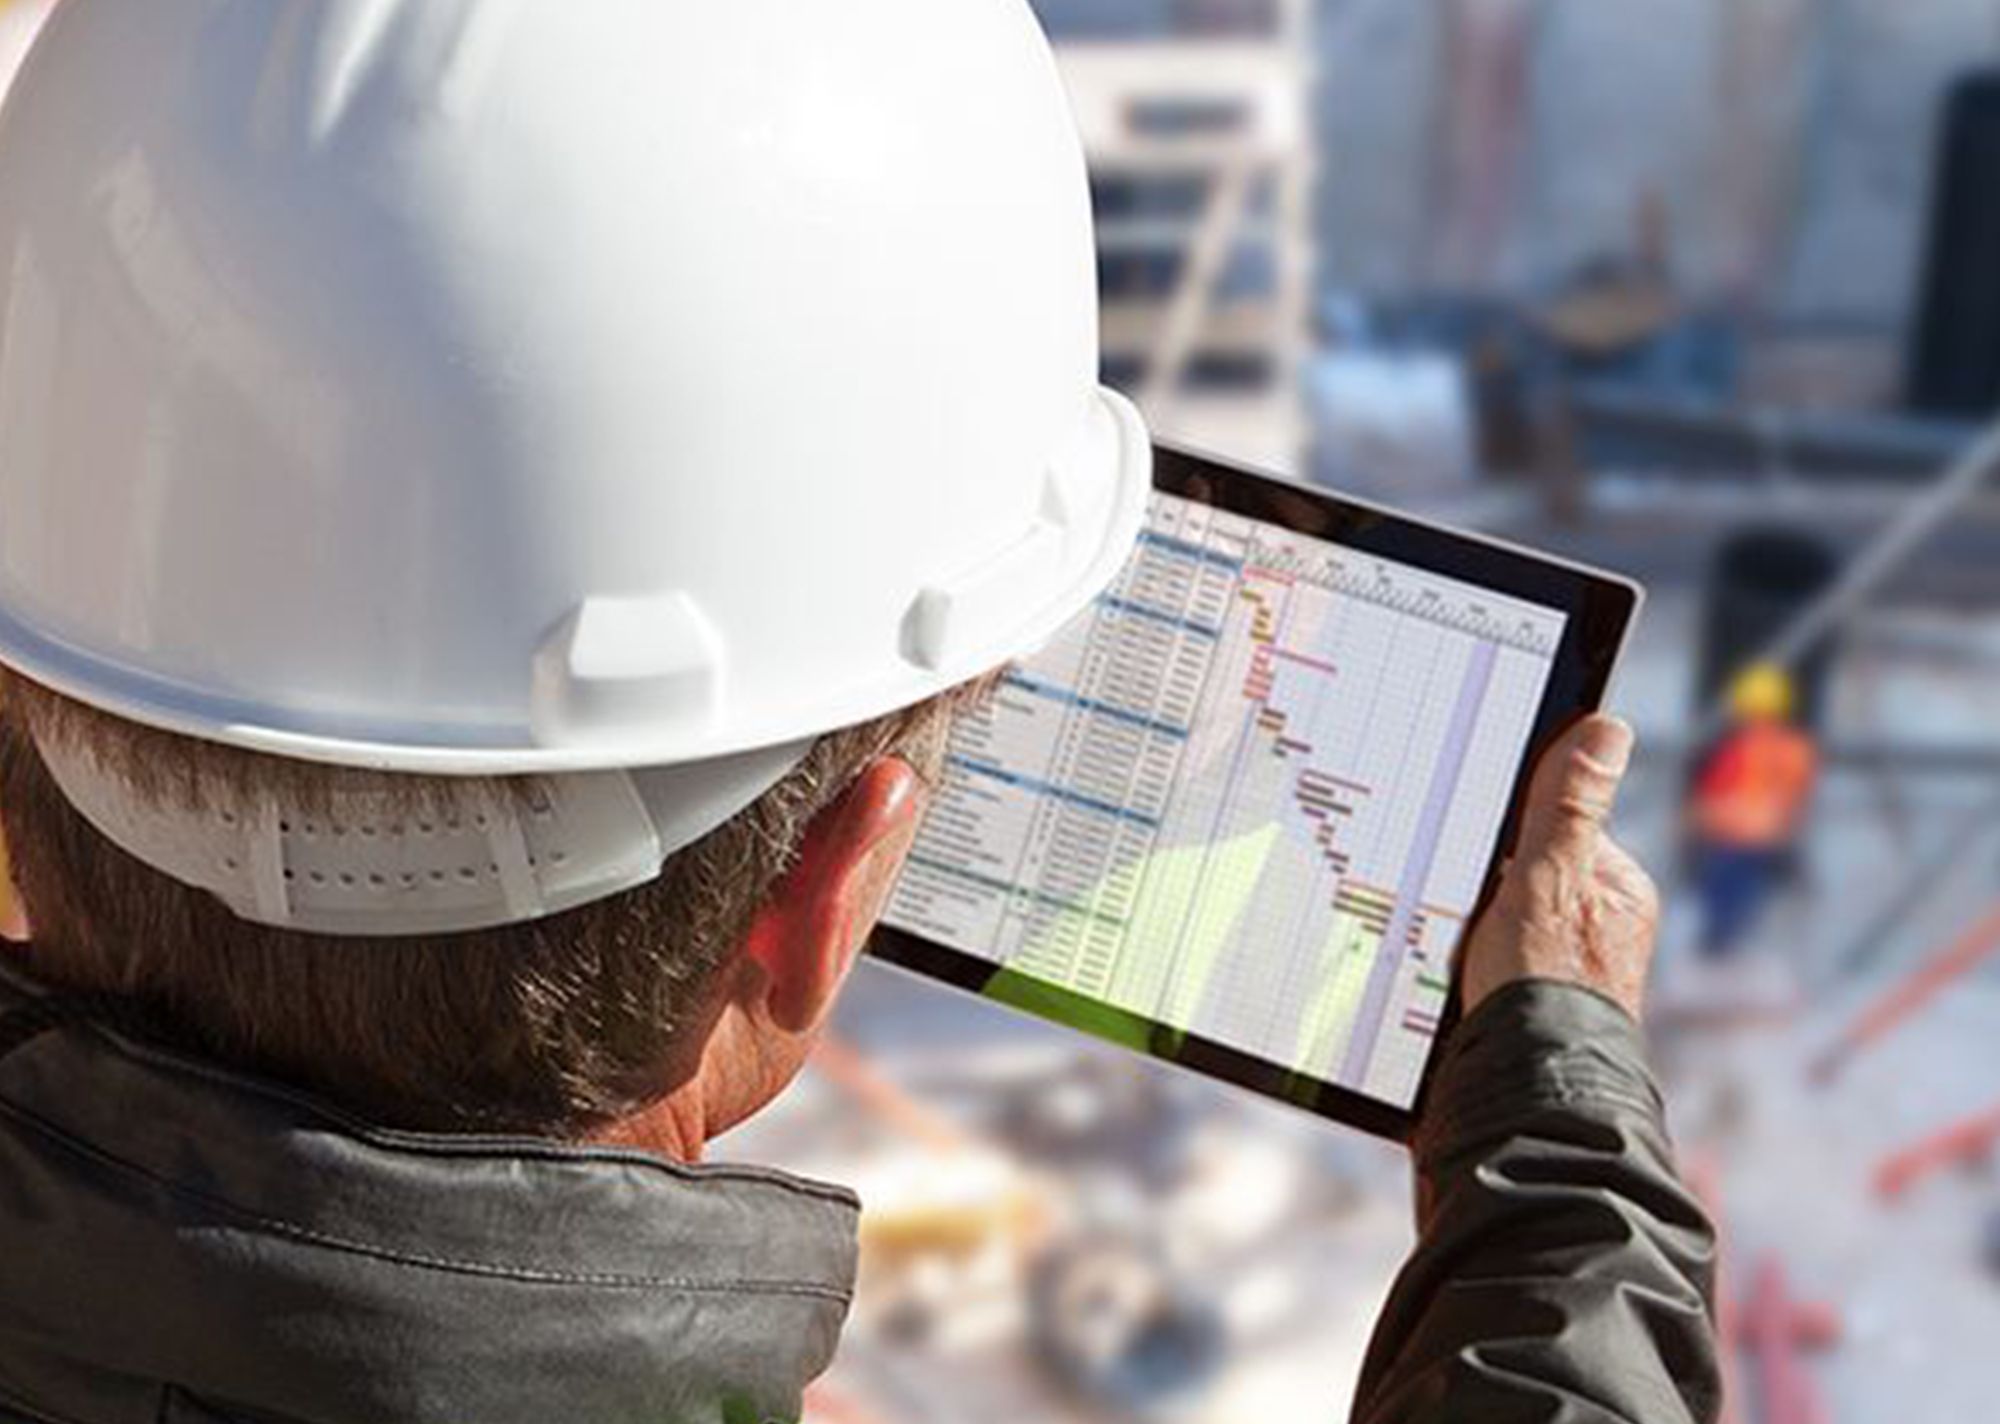 IT Management services transform a construction firm